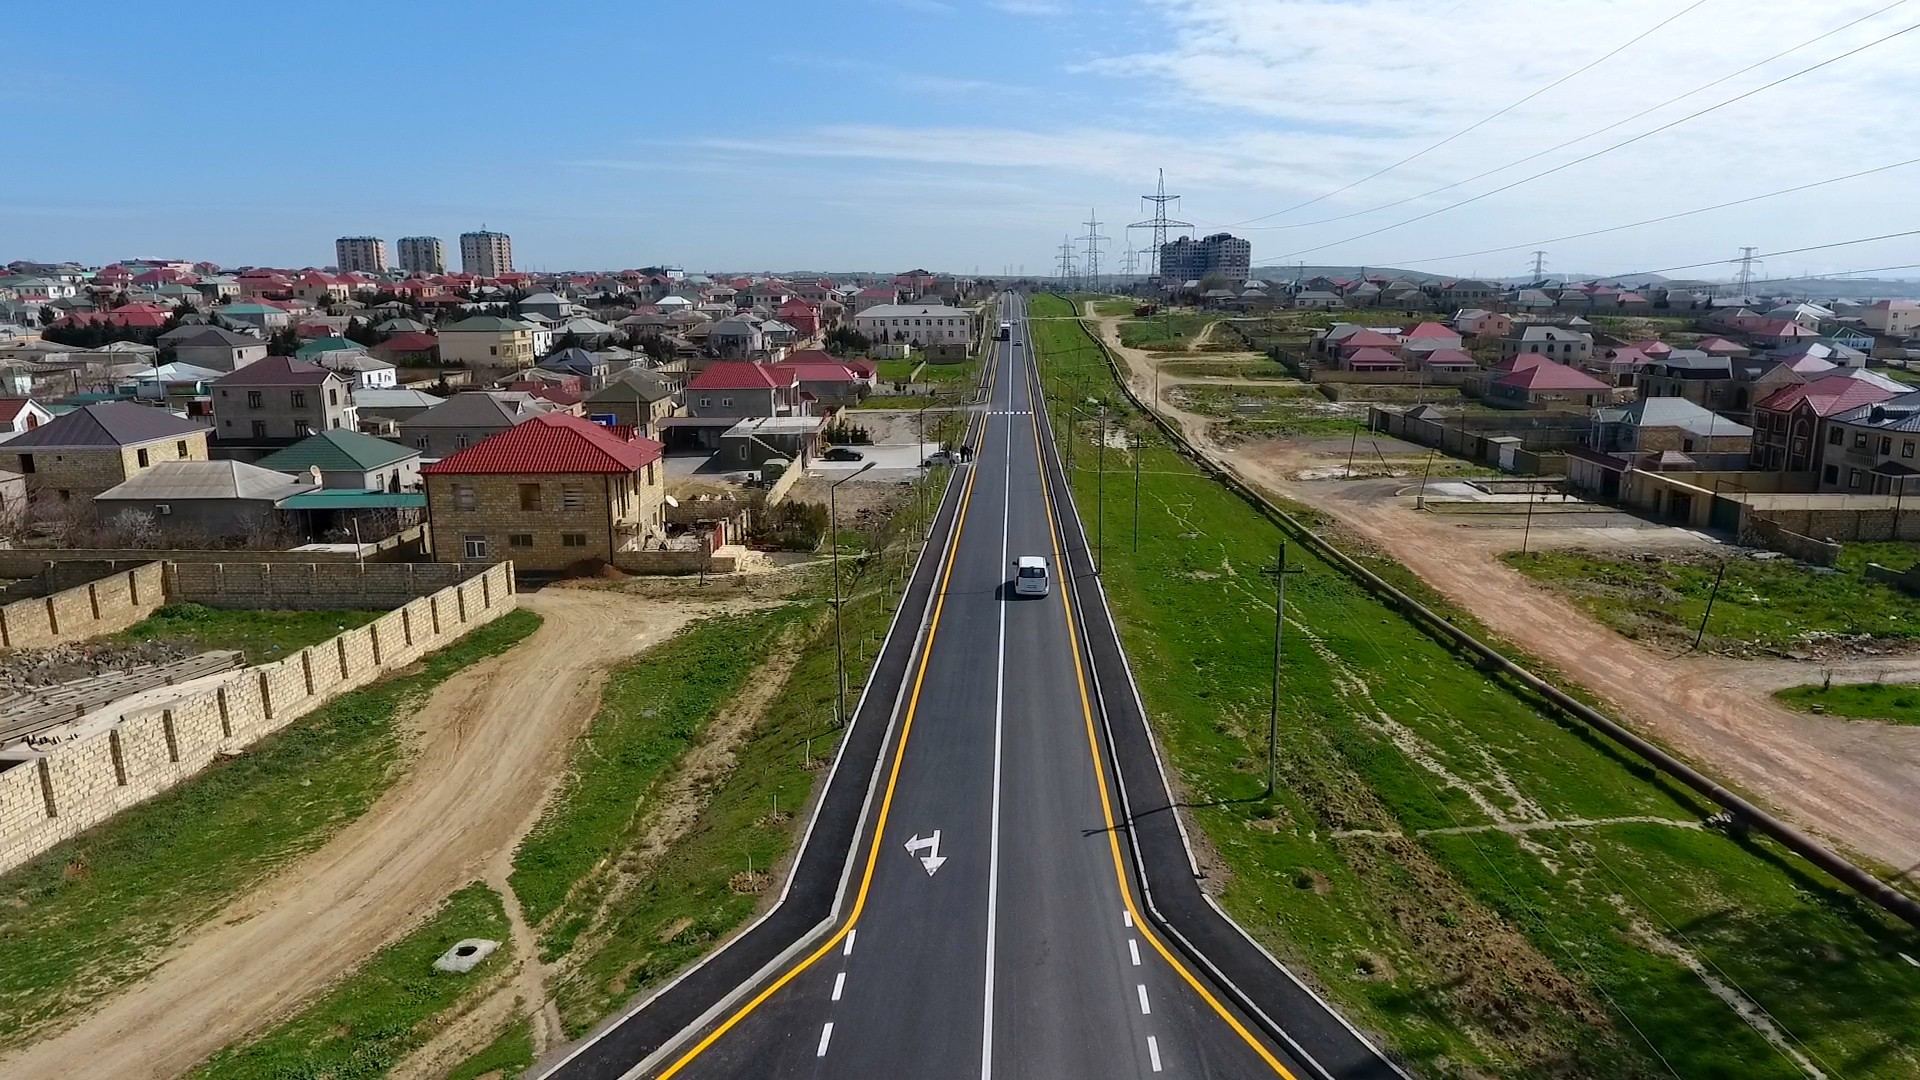 Завершилась реконструкция дороги в одном из поселков Абшеронского района (ФОТО)